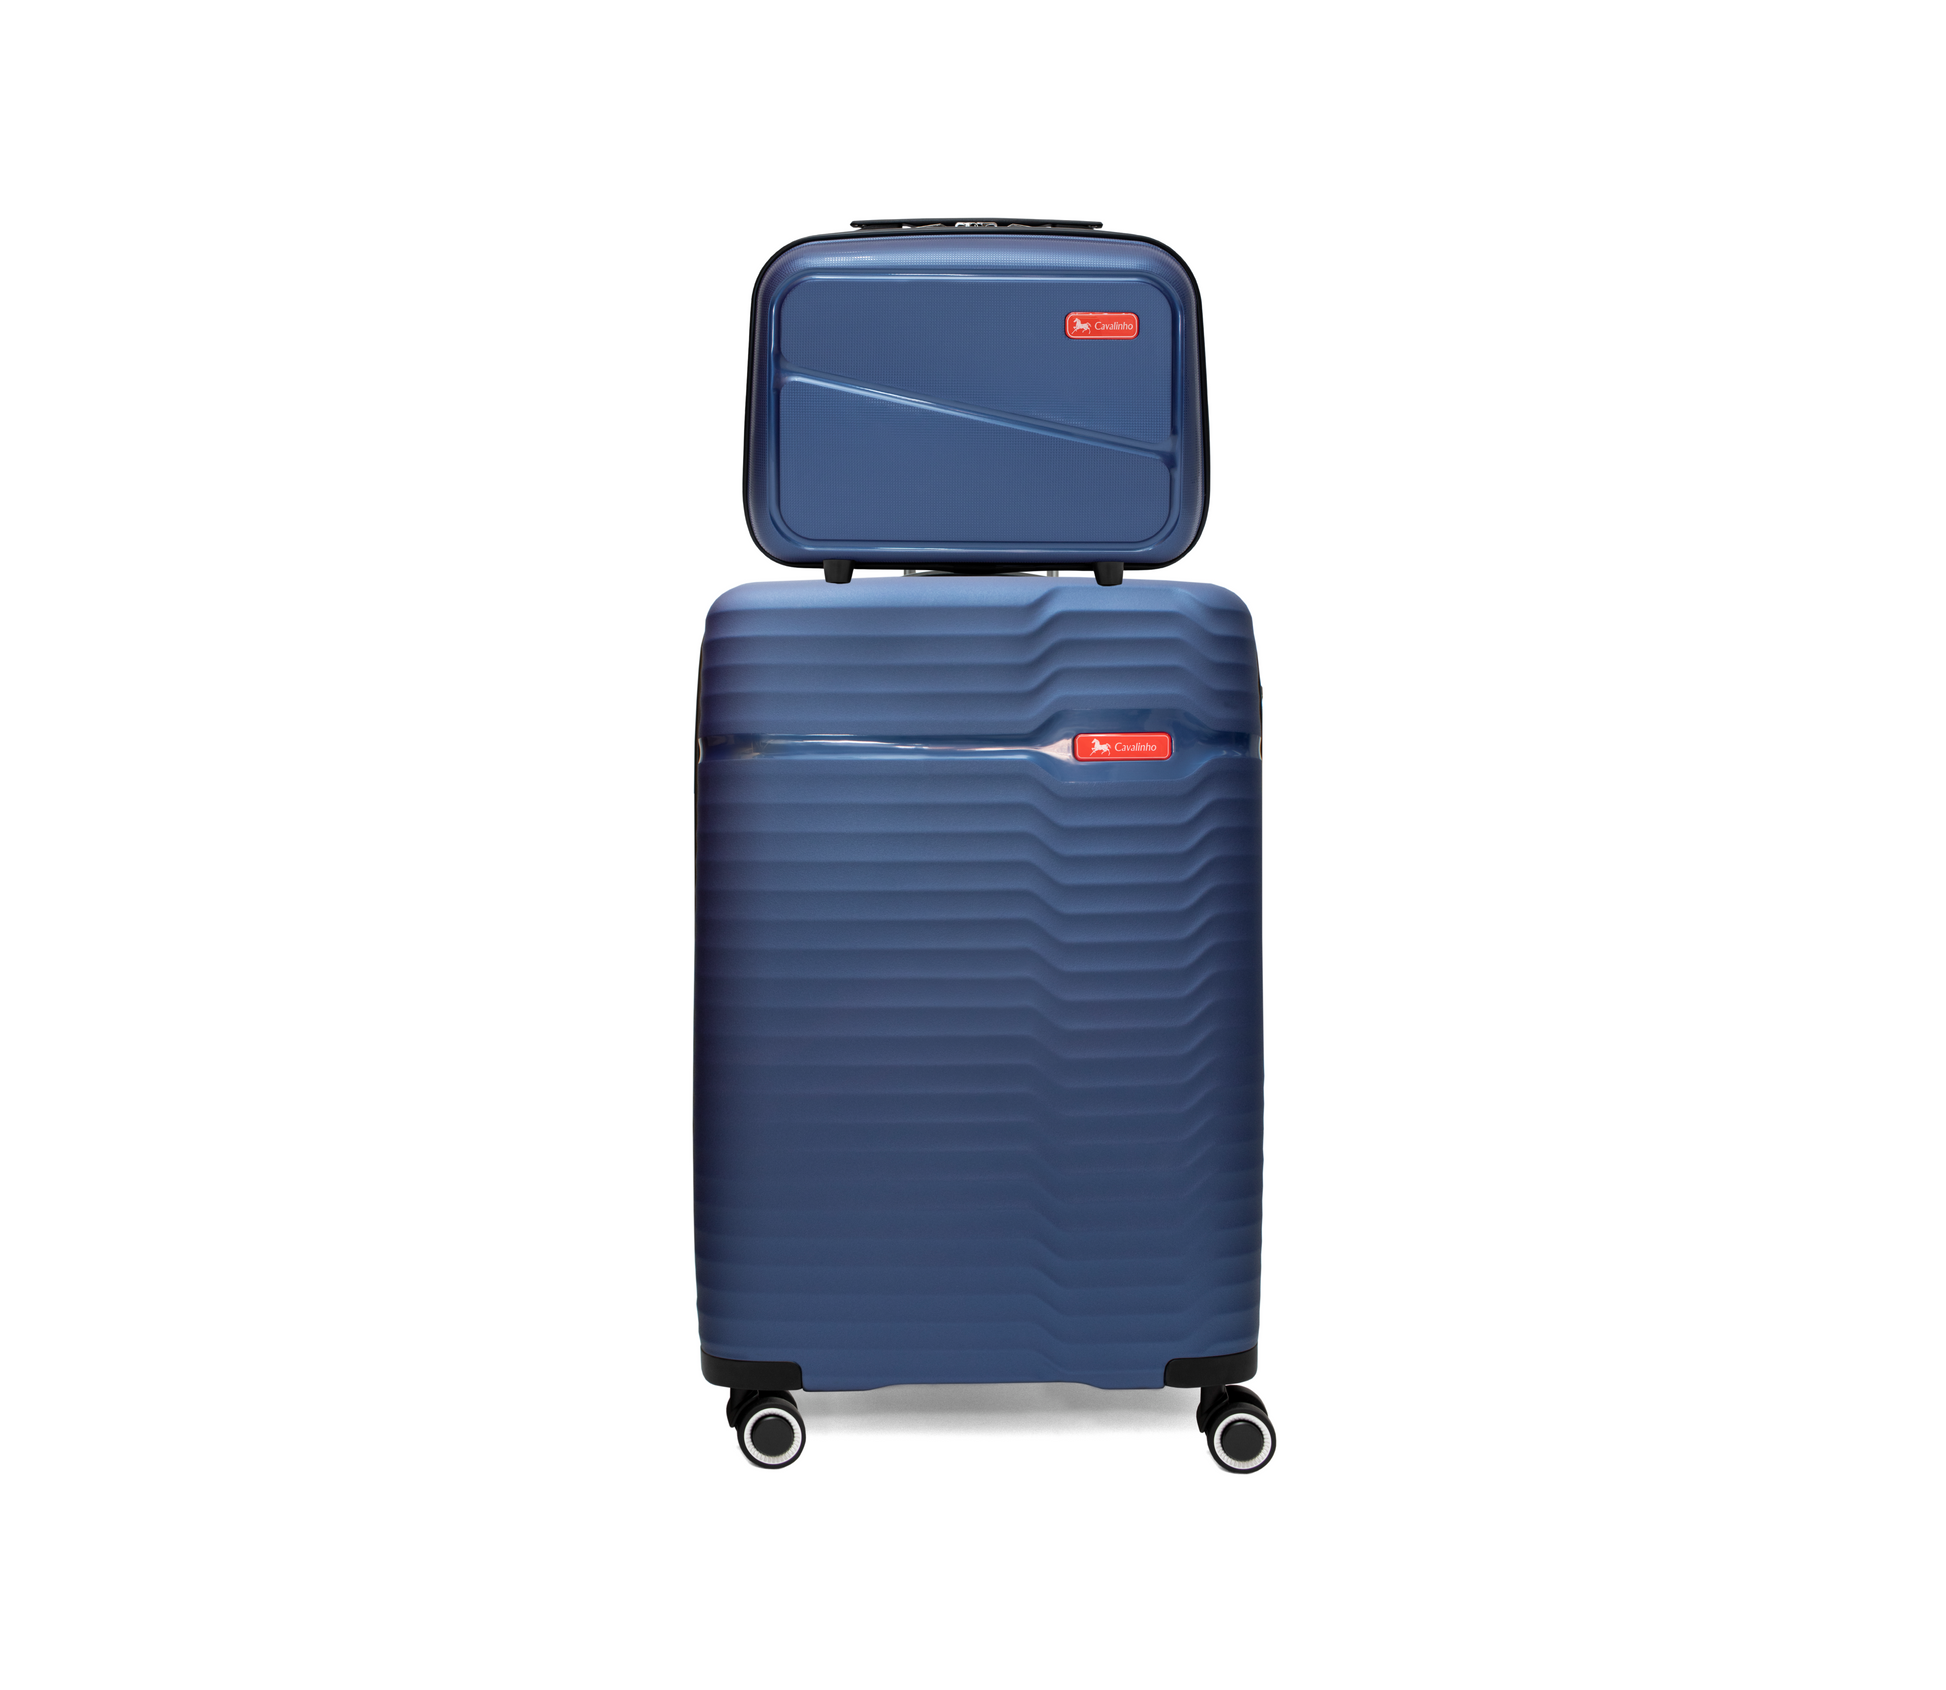 Cavalinho 3 Piece Hardside Luggage Set (14", 24" & 28") - 14 inch, 24 inch & 28 inch Set SteelBlue - 68010003.03.S2L_1_26dcd8bf-33d3-42c9-b177-39c25f7eb858